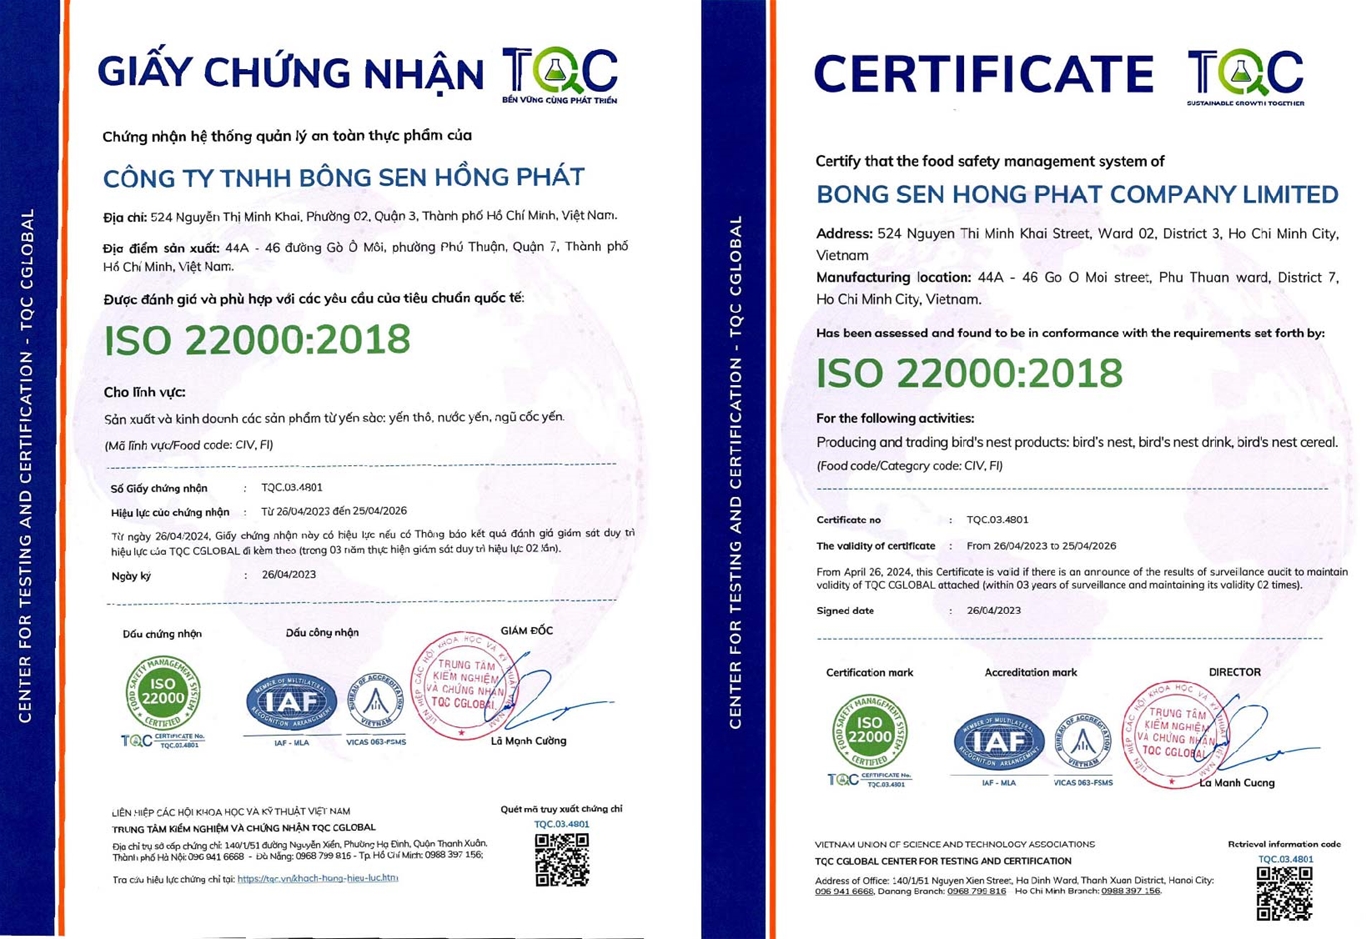 Mẫu chứng chỉ ISO 22000 tại TQC CGLOBAL